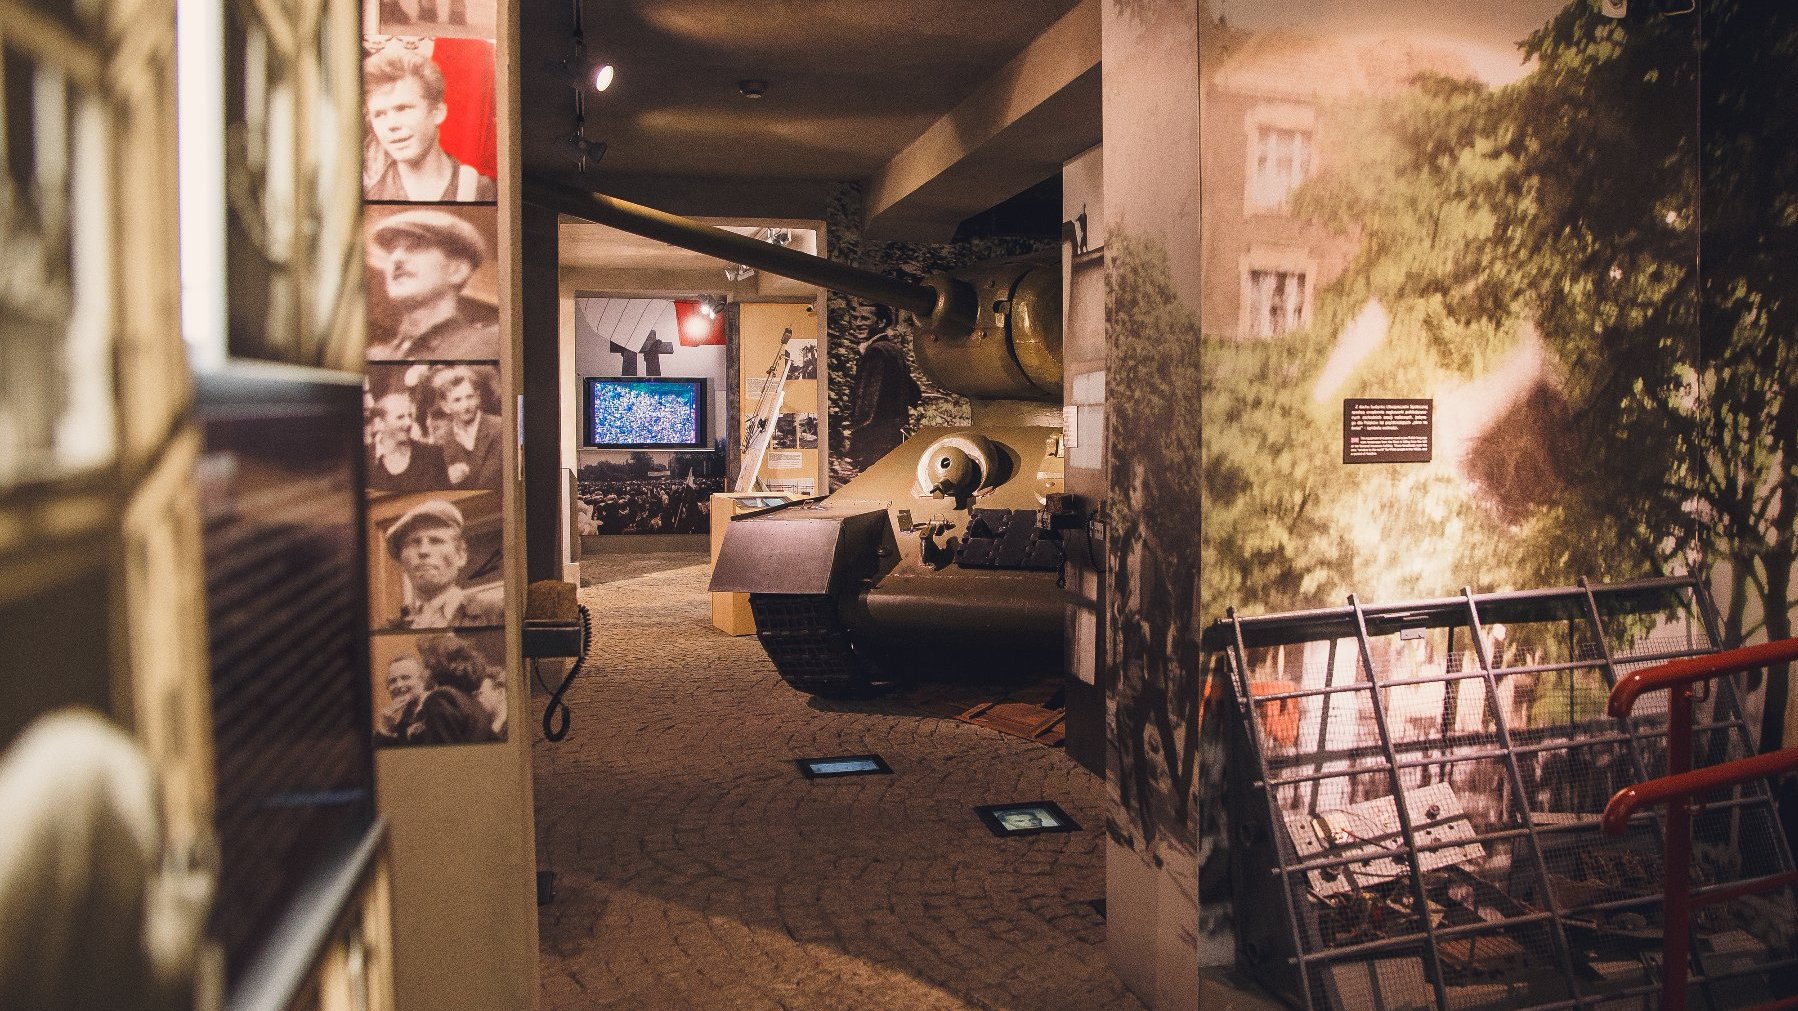 Część ekspozycji muzealnej Poznańskiego Czerwca 1956. W centrum widać część czołgu. Dookoła na ścianach wiszą zdjęcia uczestników strajku. W tle ekran telewizora, na którym wyświetlone jest przemówienie Stanisława Matyi z uroczystości odsłonięcia pomnika "Jedność".